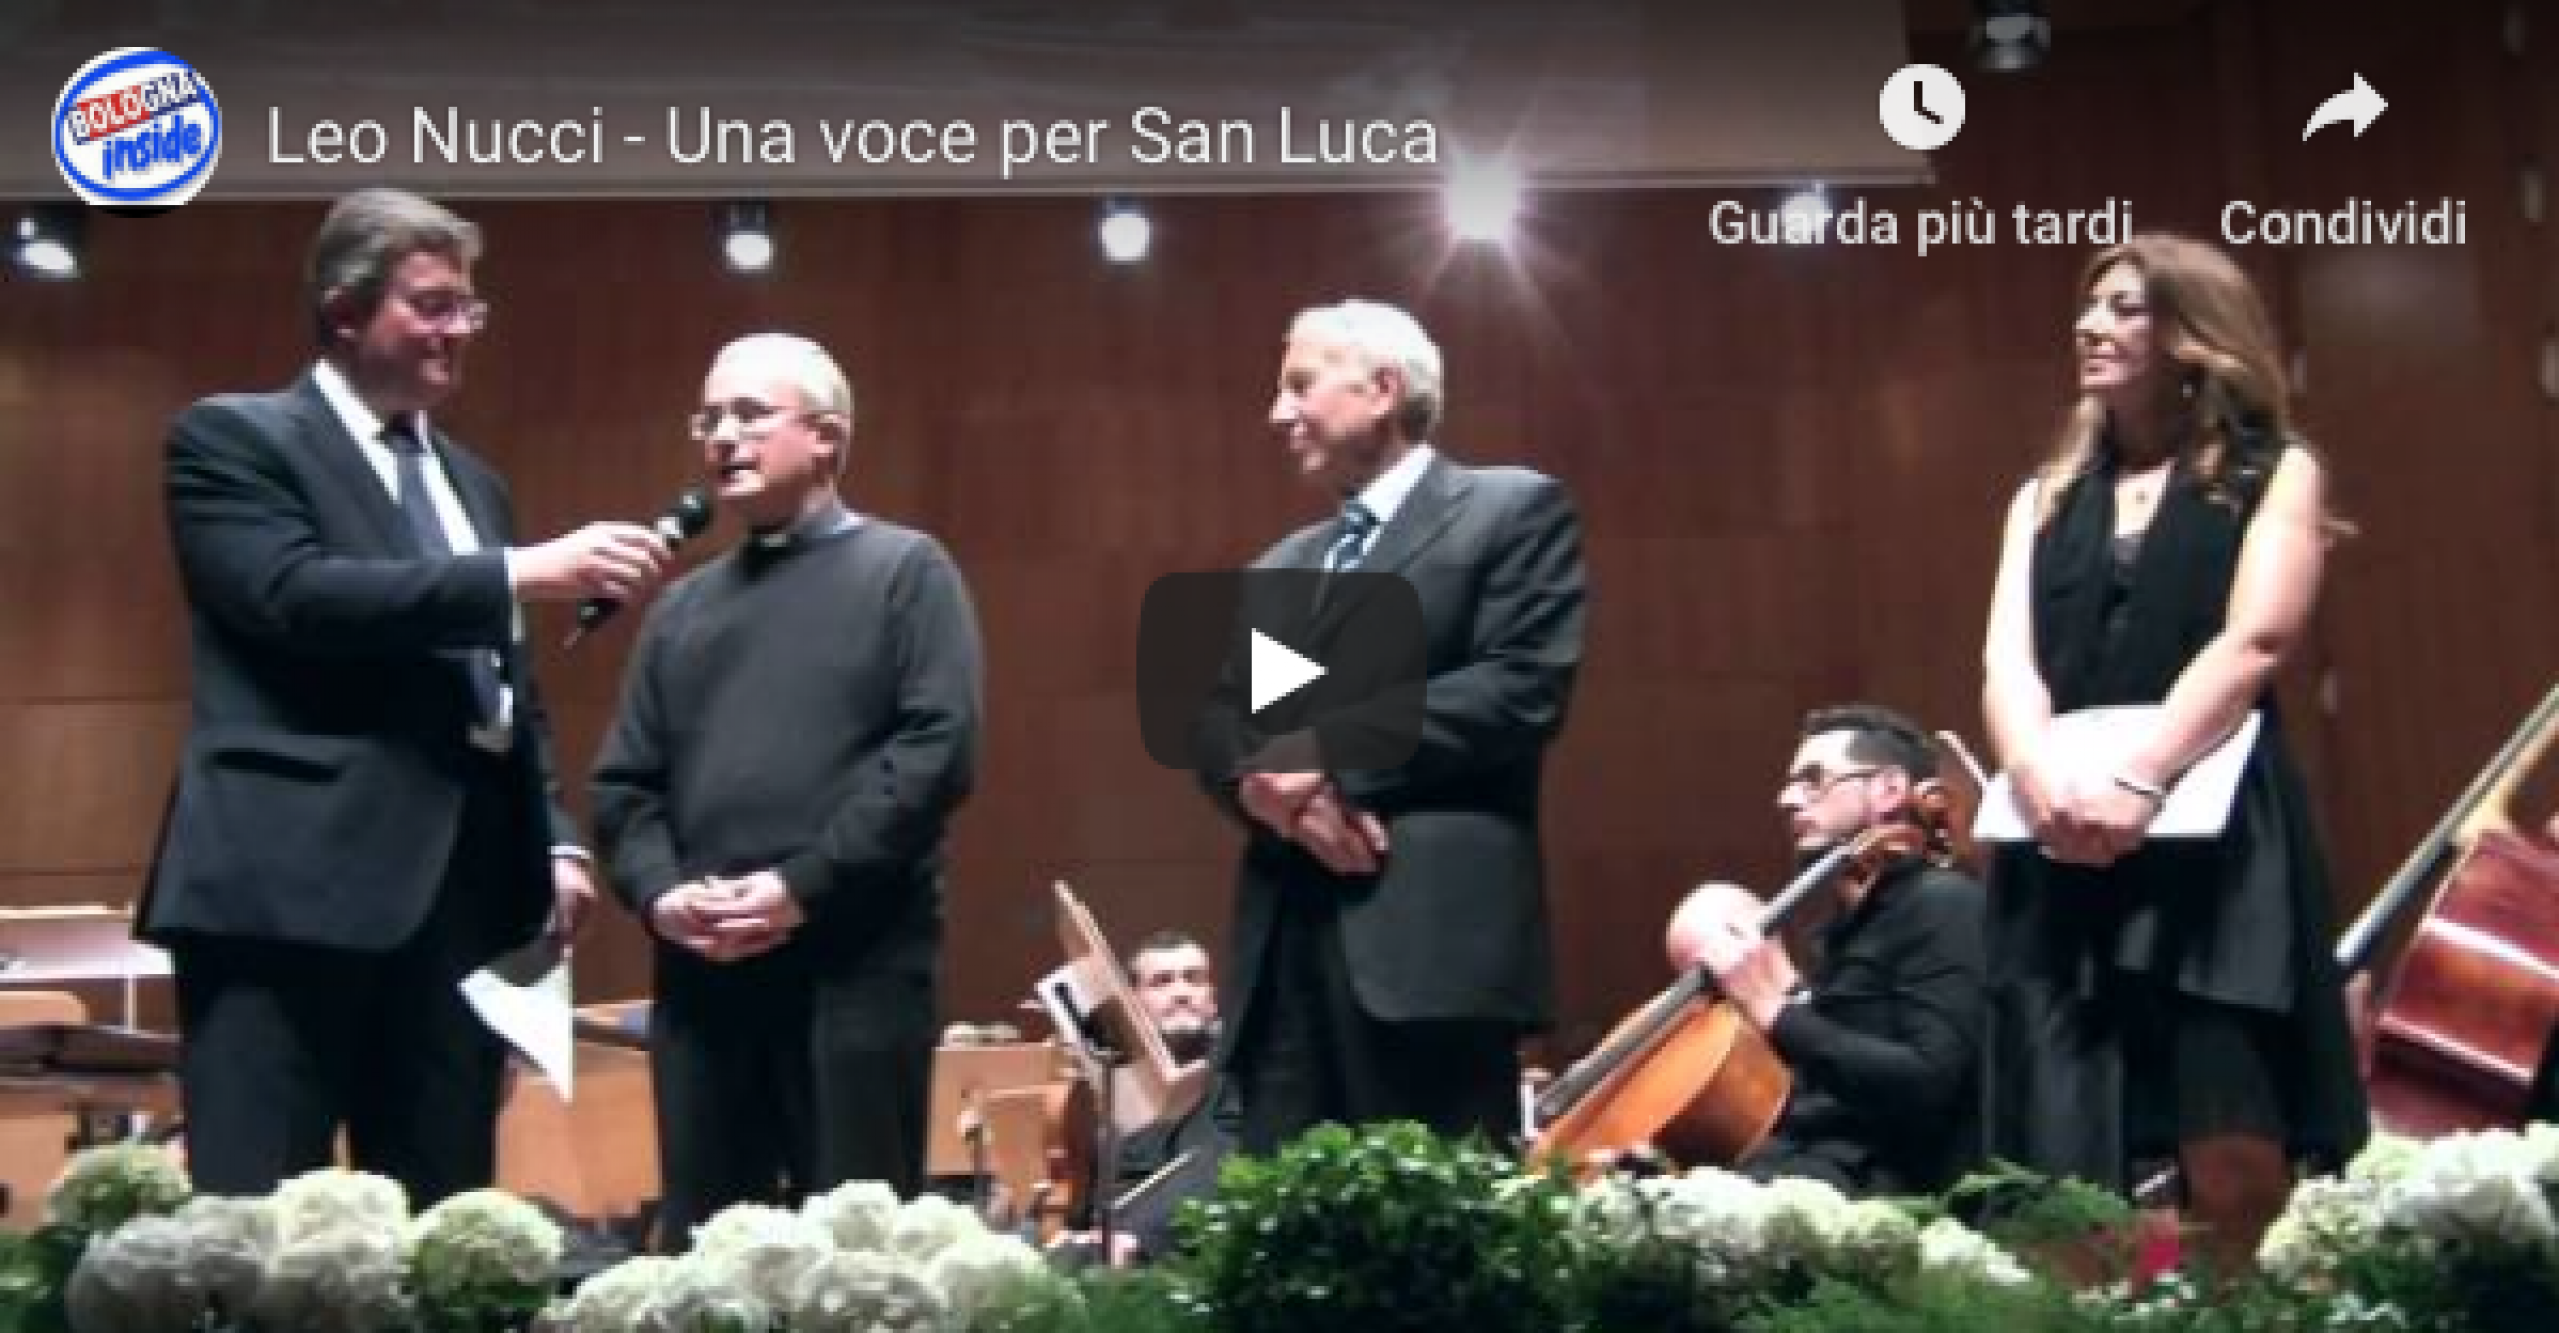 Leo Nucci - Una voce per San Luca